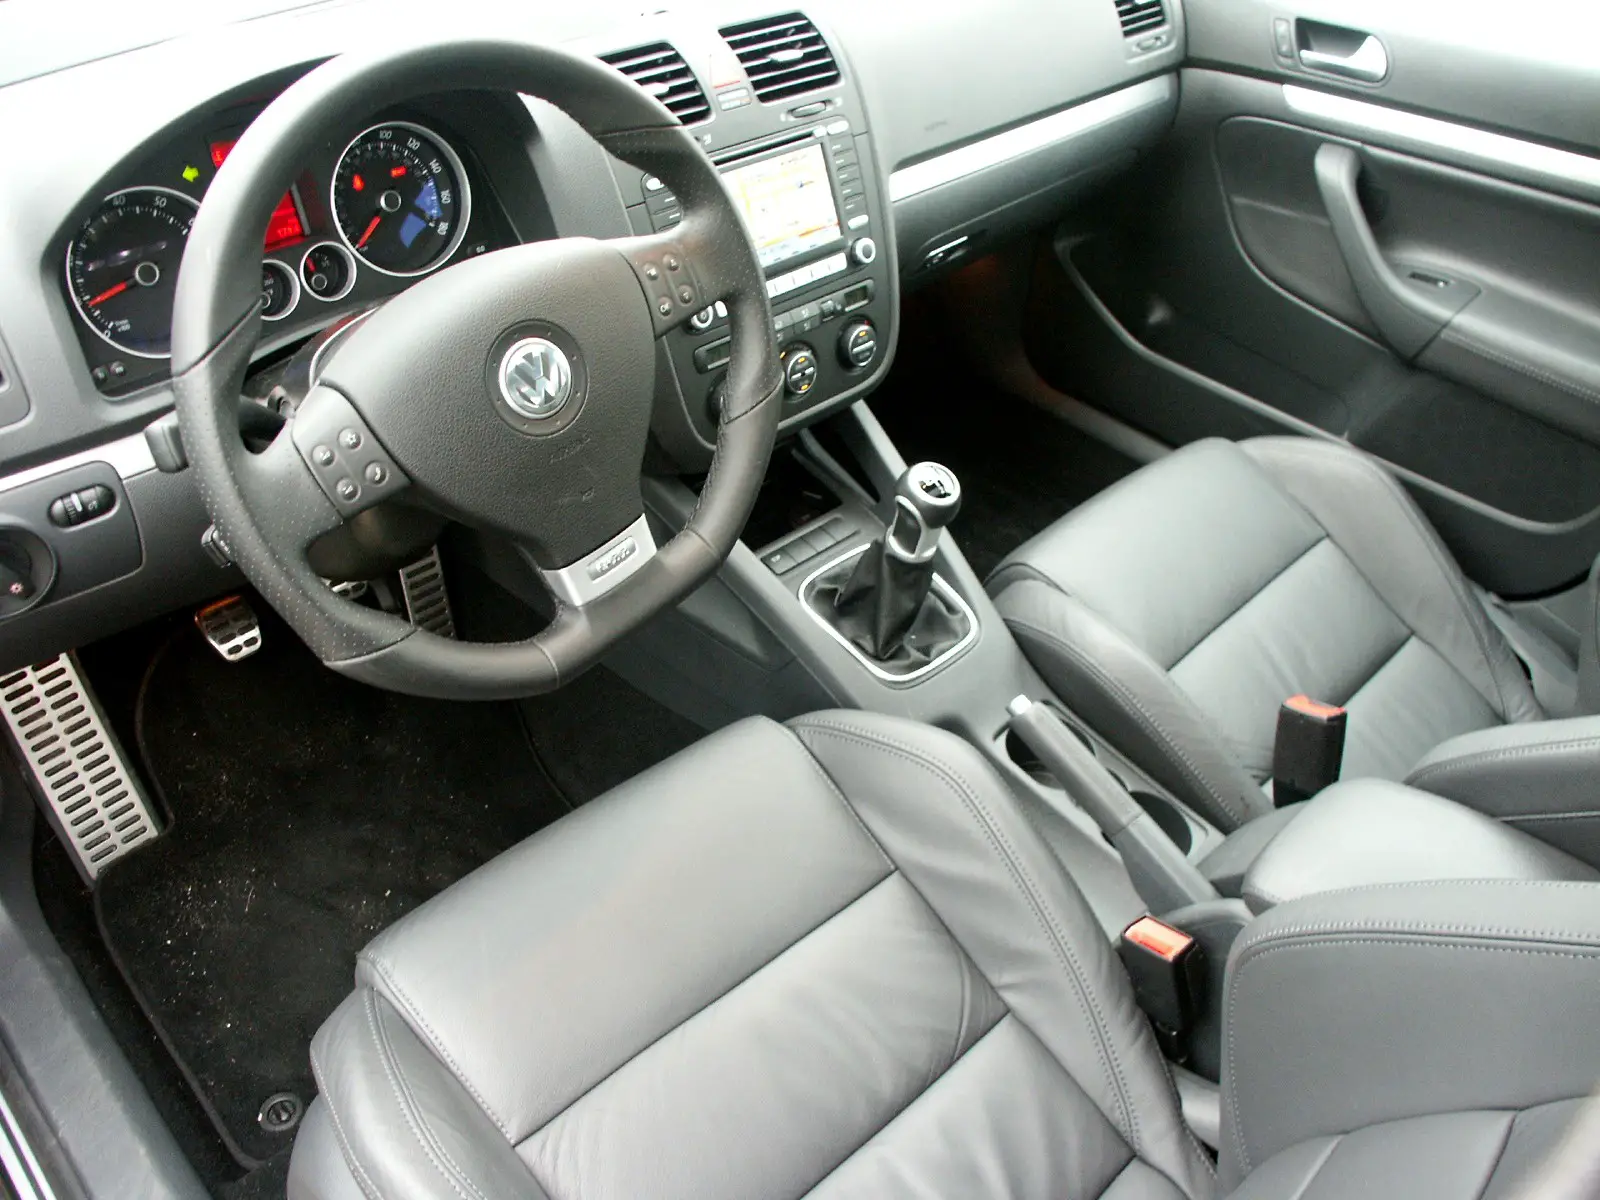 2007 Volkswagen Gti Mk5 Review